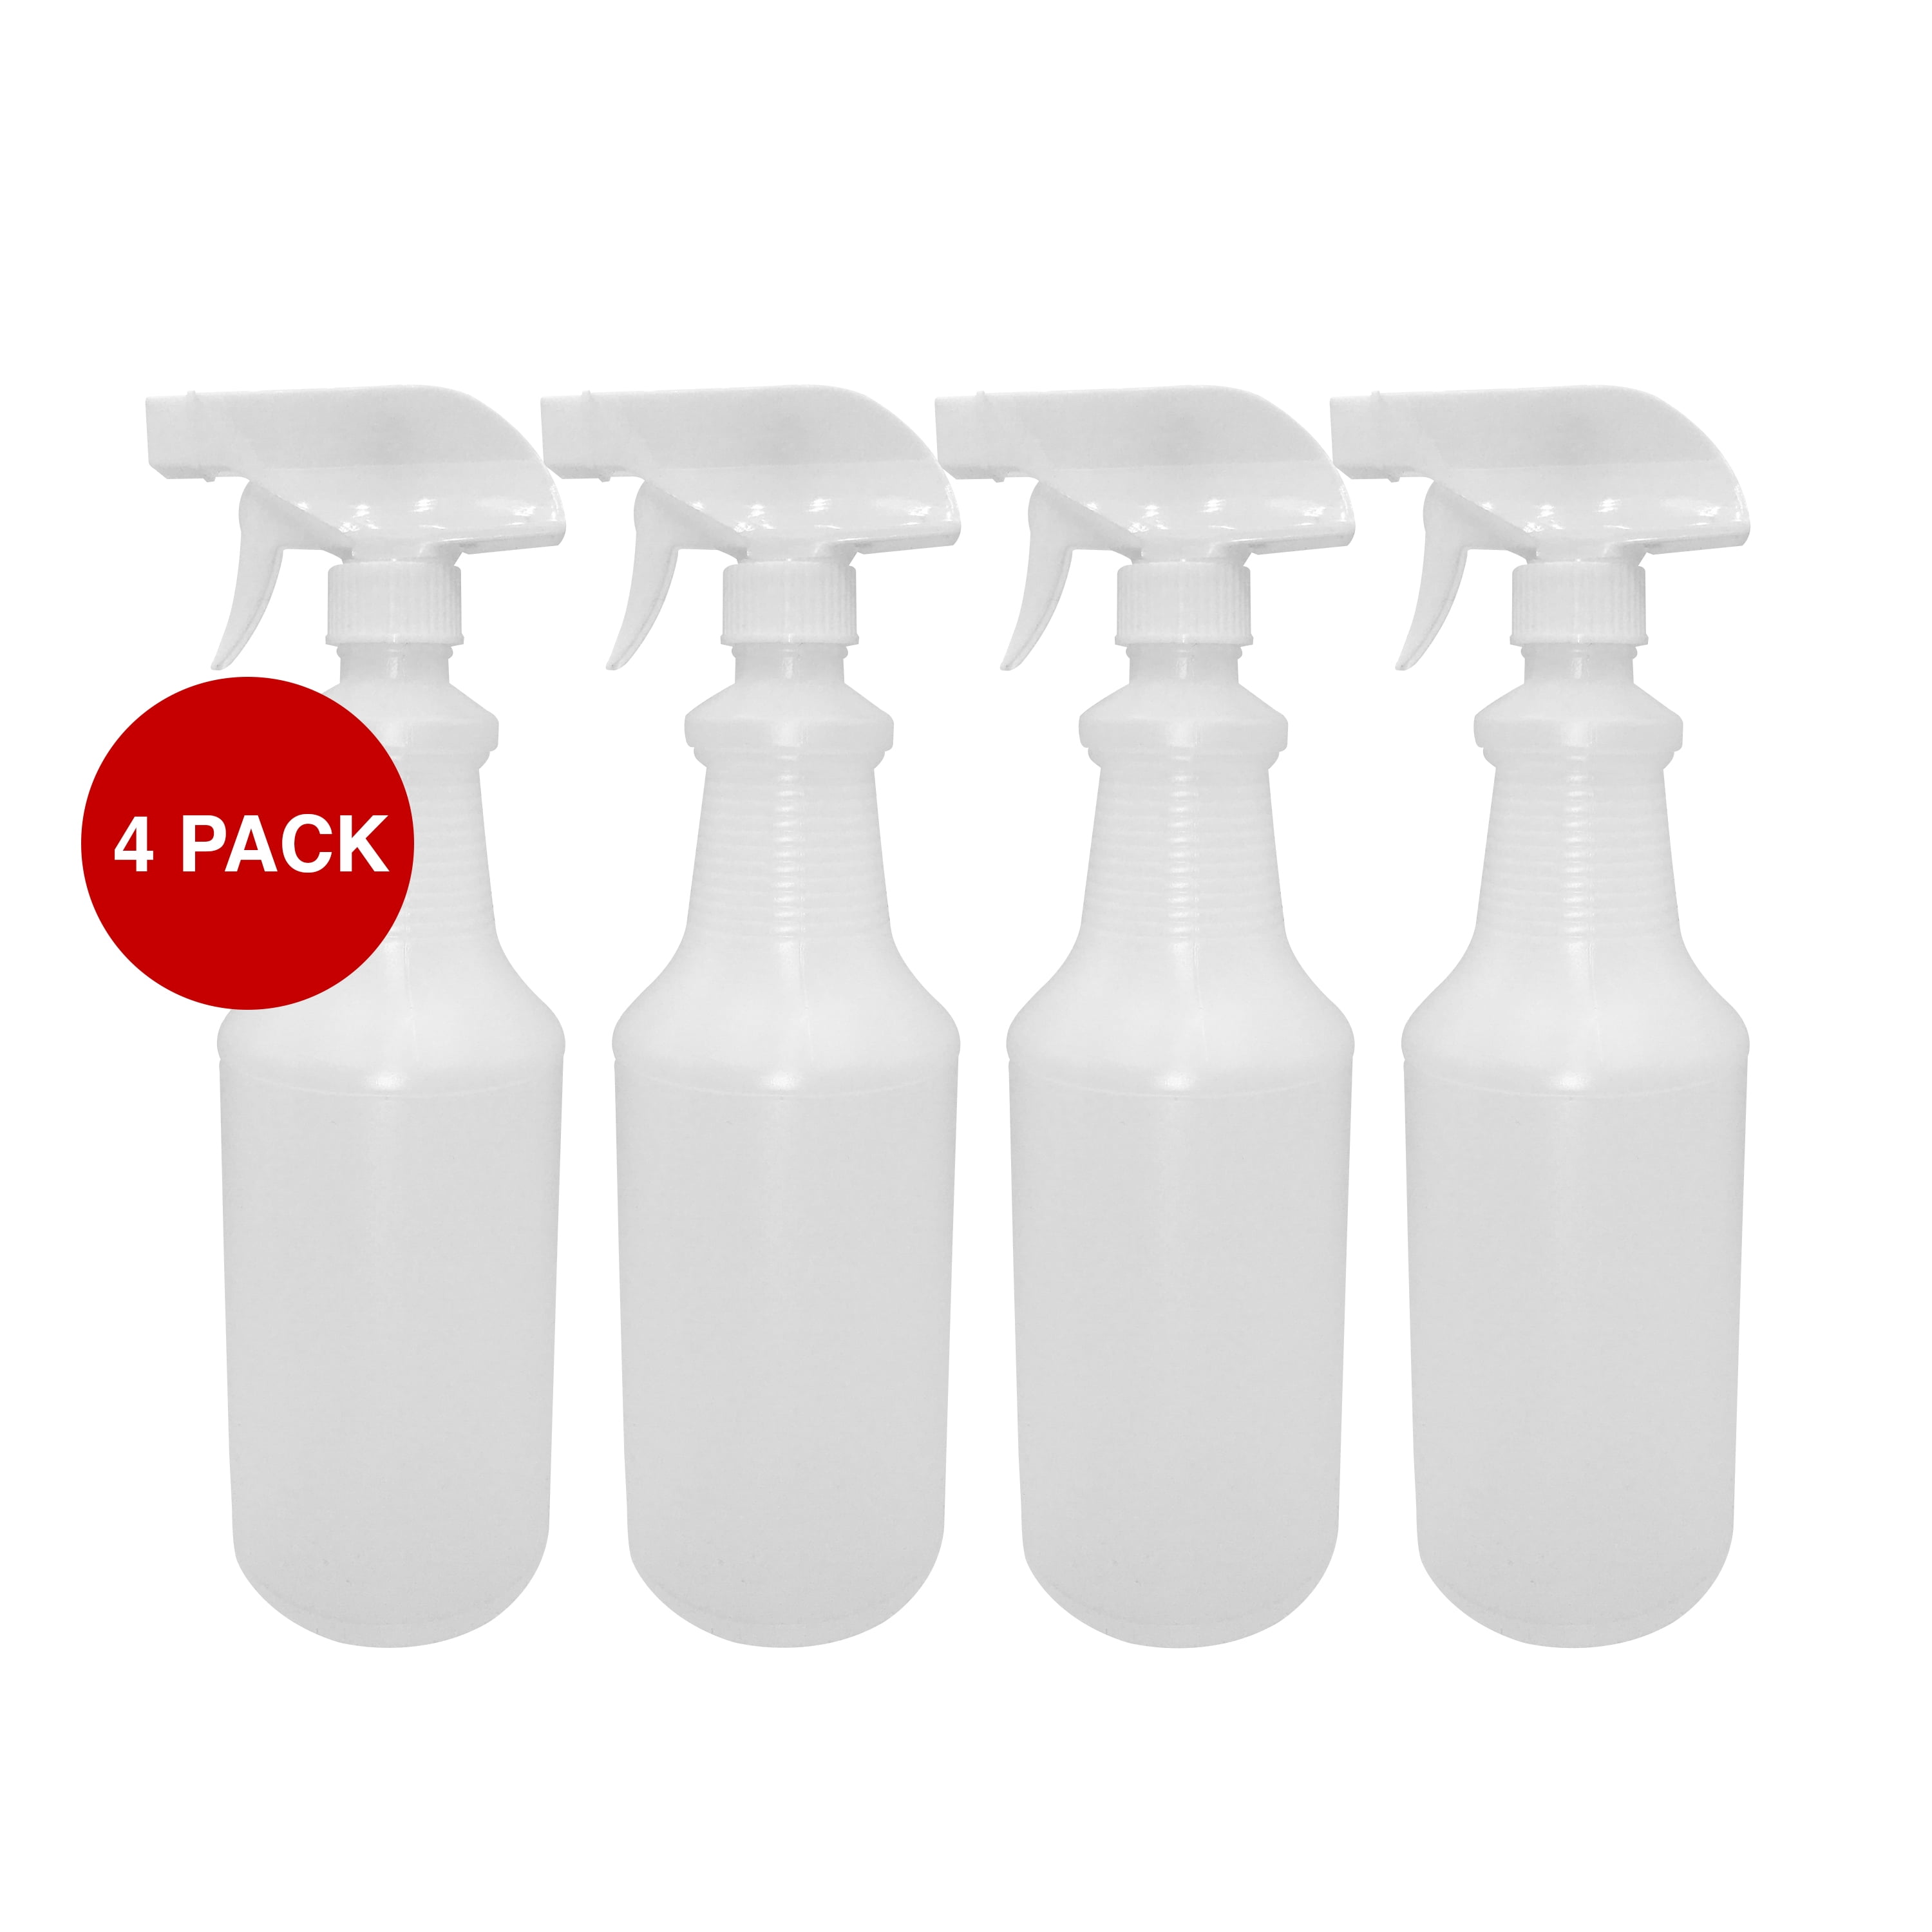 Spärkel Bottle 2-Pack – Sparkel